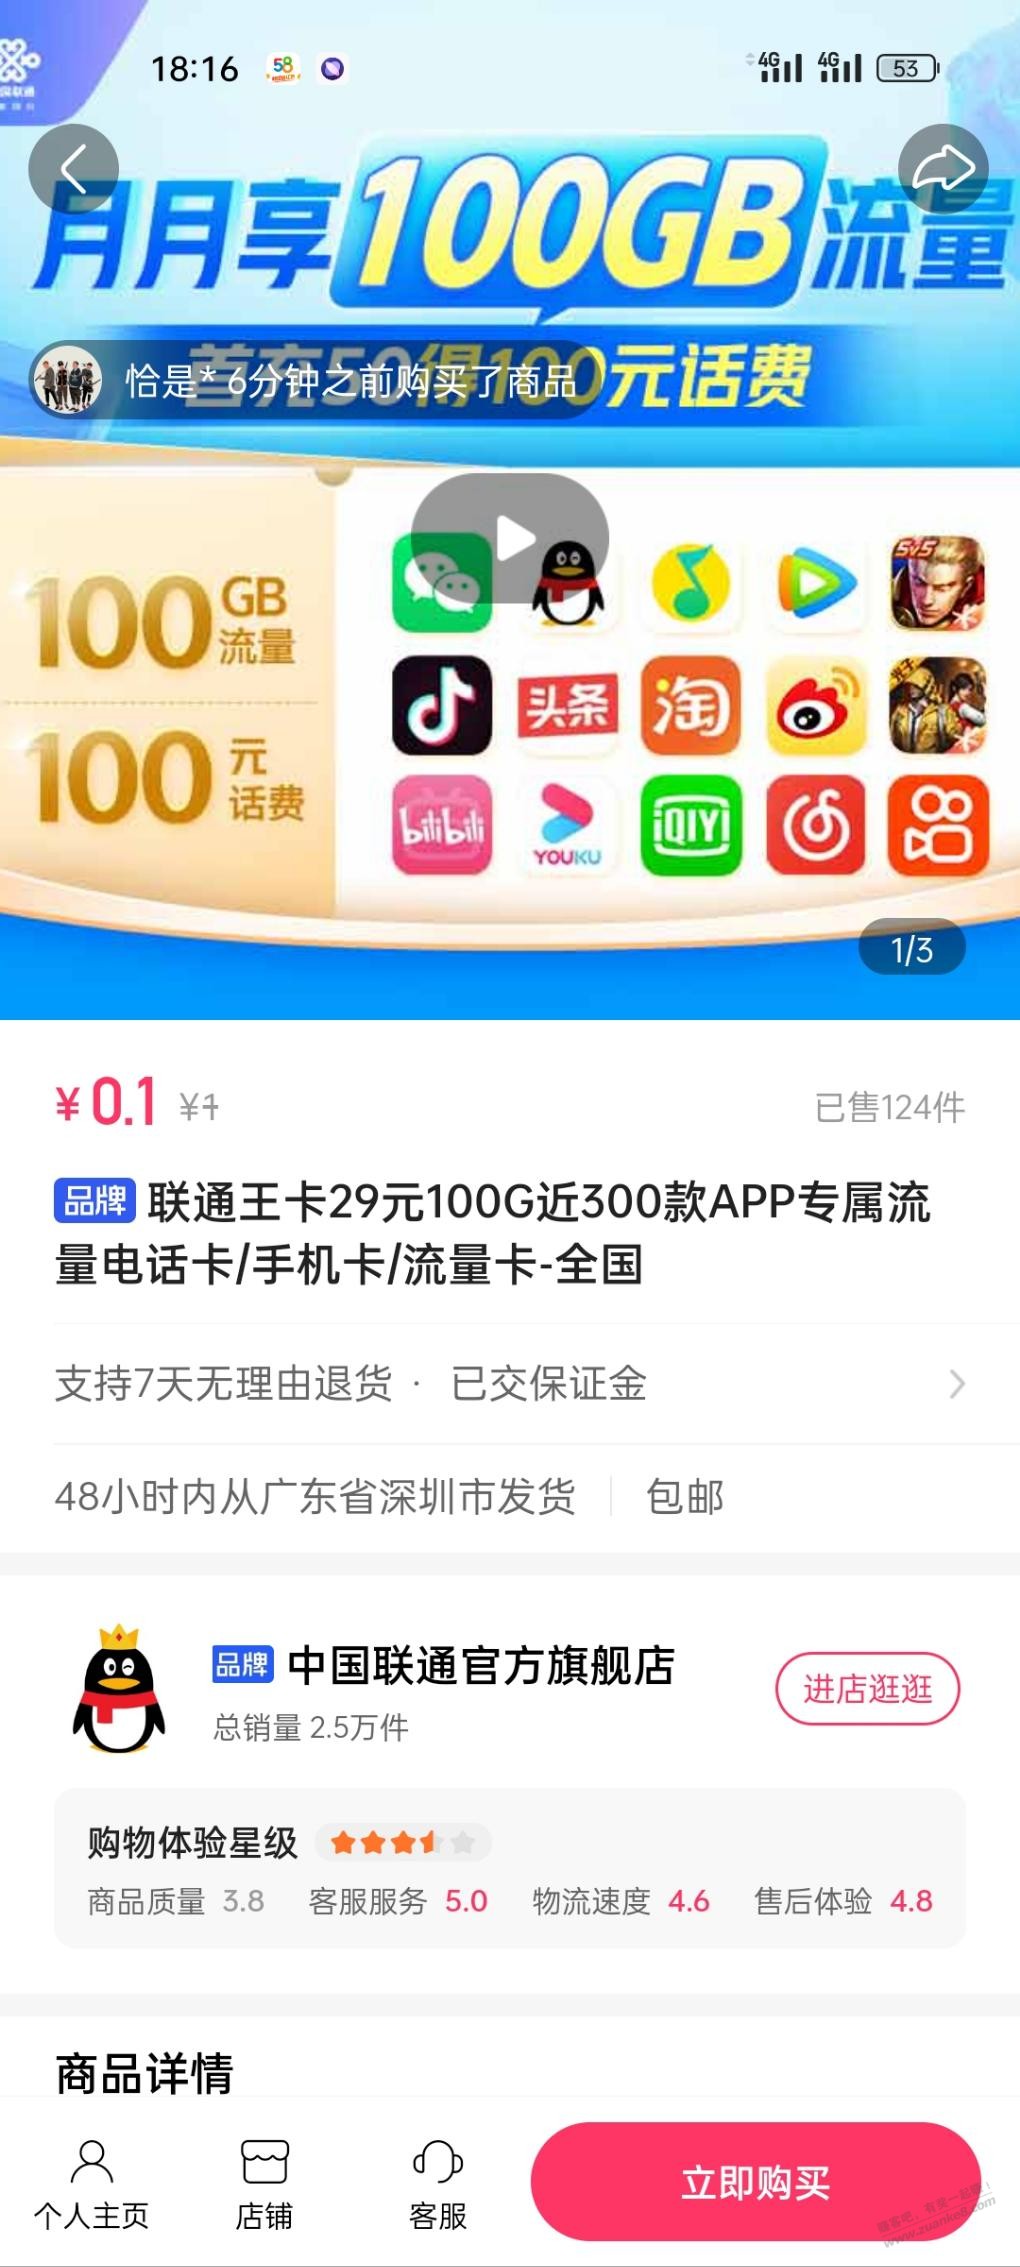 联通官方店也在推29月租100g流量-惠小助(52huixz.com)